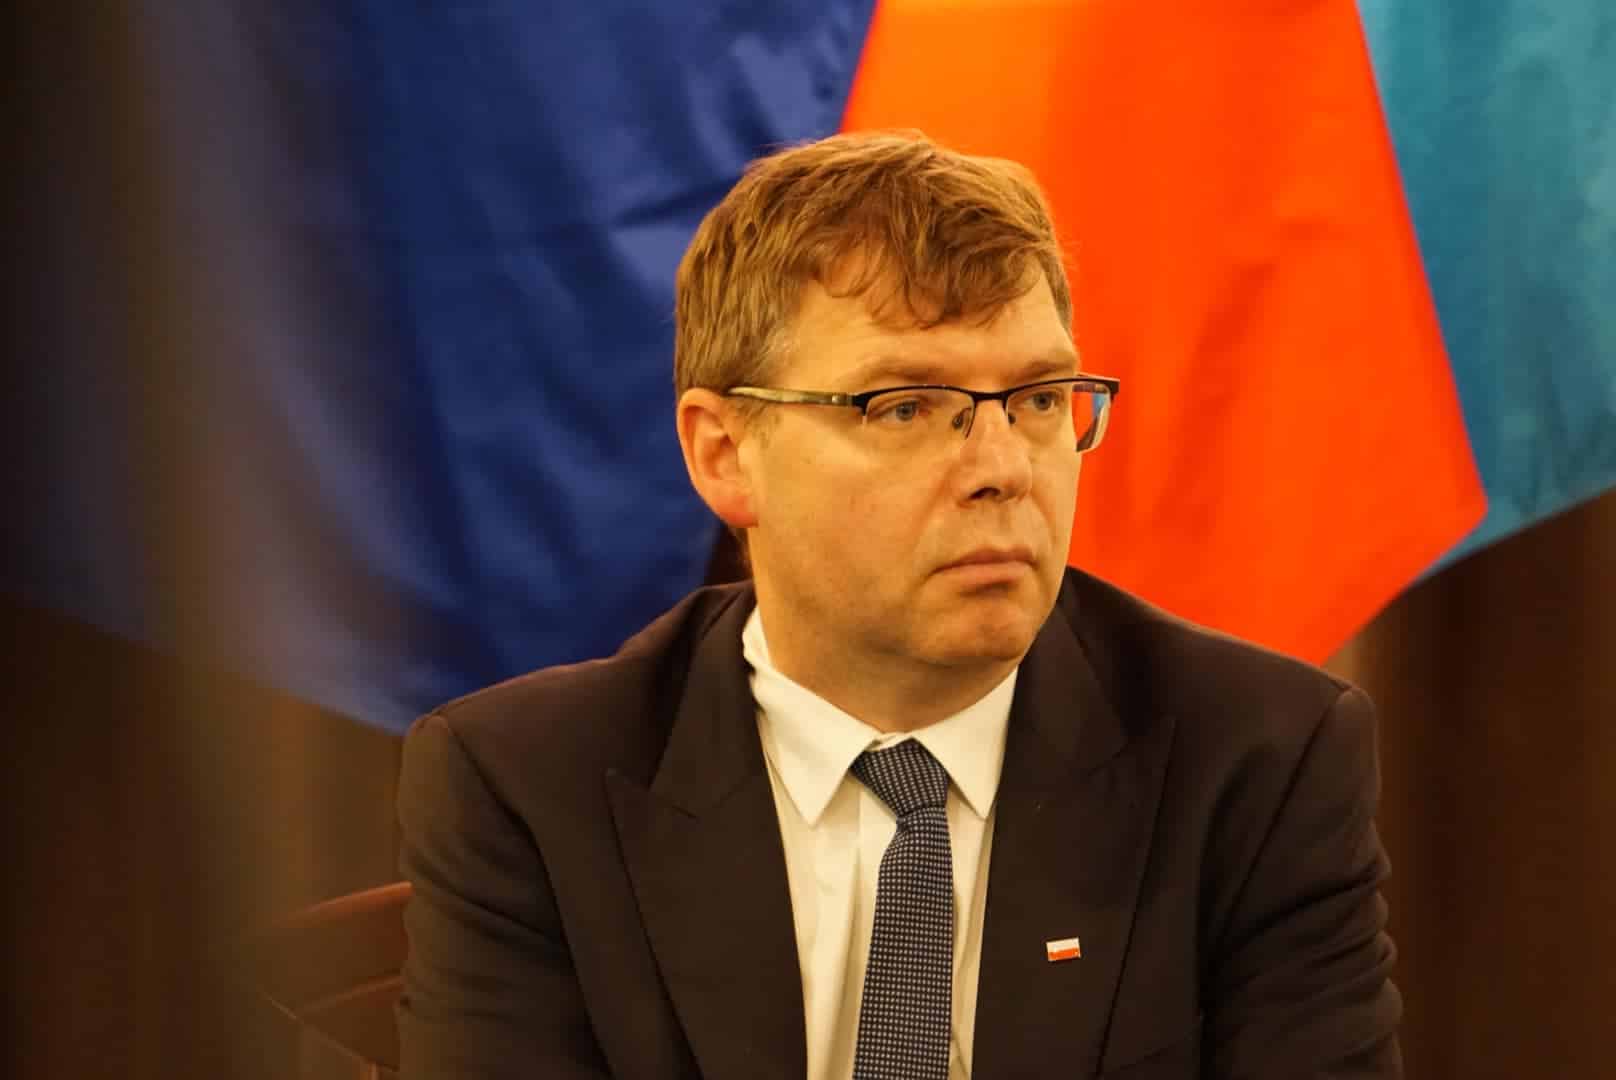 Wojewoda przekazał samorządom 365,5 mln zł z tytułu dodatku węglowego gospodarka Olsztyn, Wiadomości